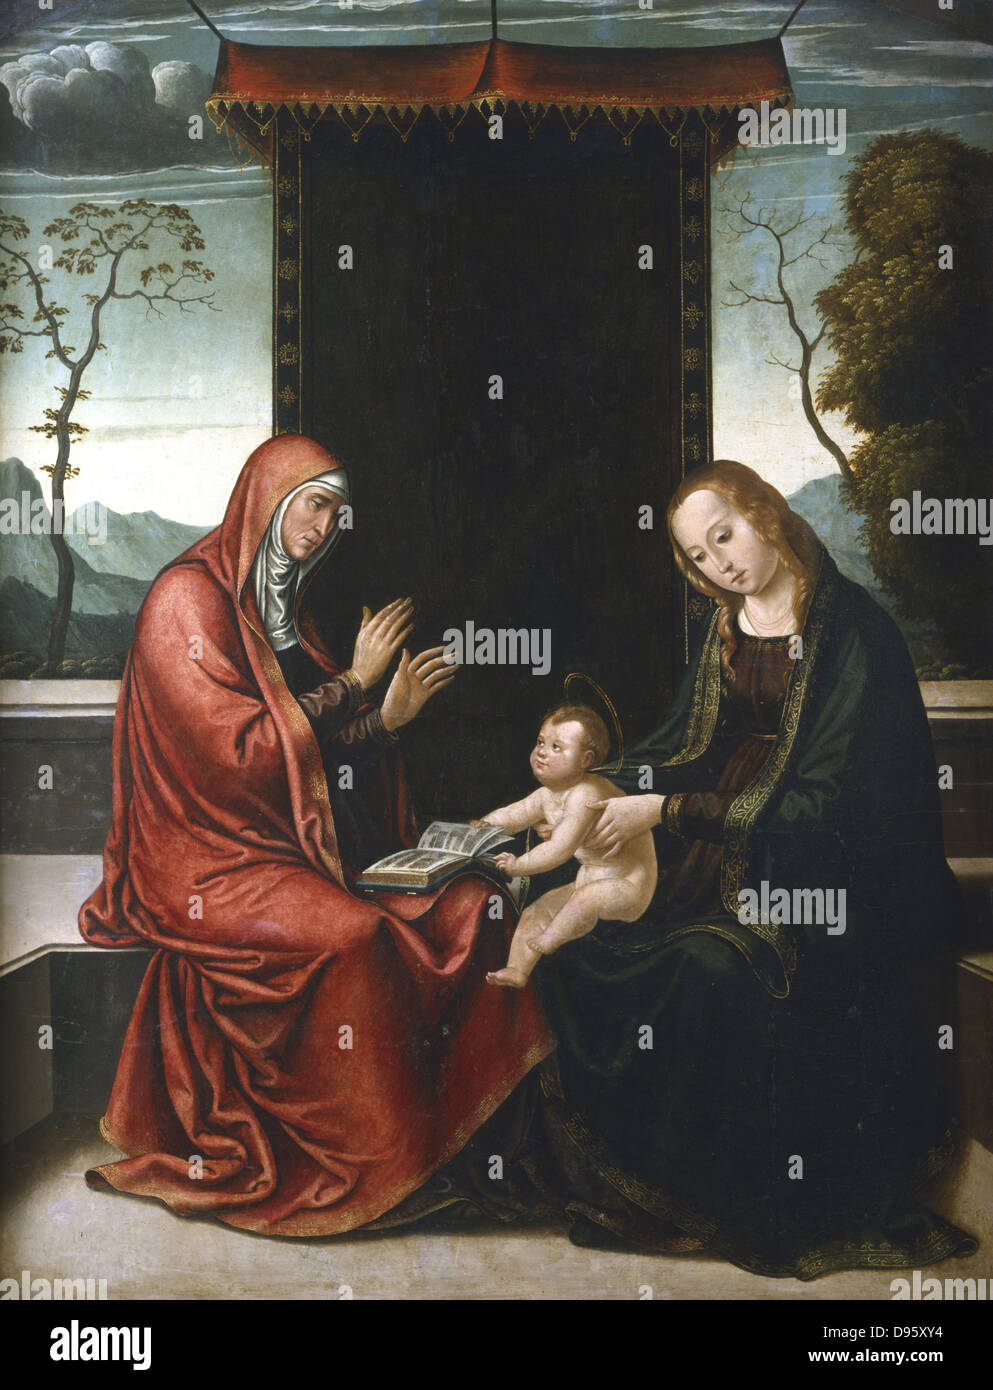 St. Anne, die Jungfrau und das Kind". St. Anne, war die Mutter der Jungfrau Maria und Großmutter von Jesus. Jean de Borgona der Zweiten (c) 1500-1565. Öl auf Holz. Private Sammlung. Stockfoto